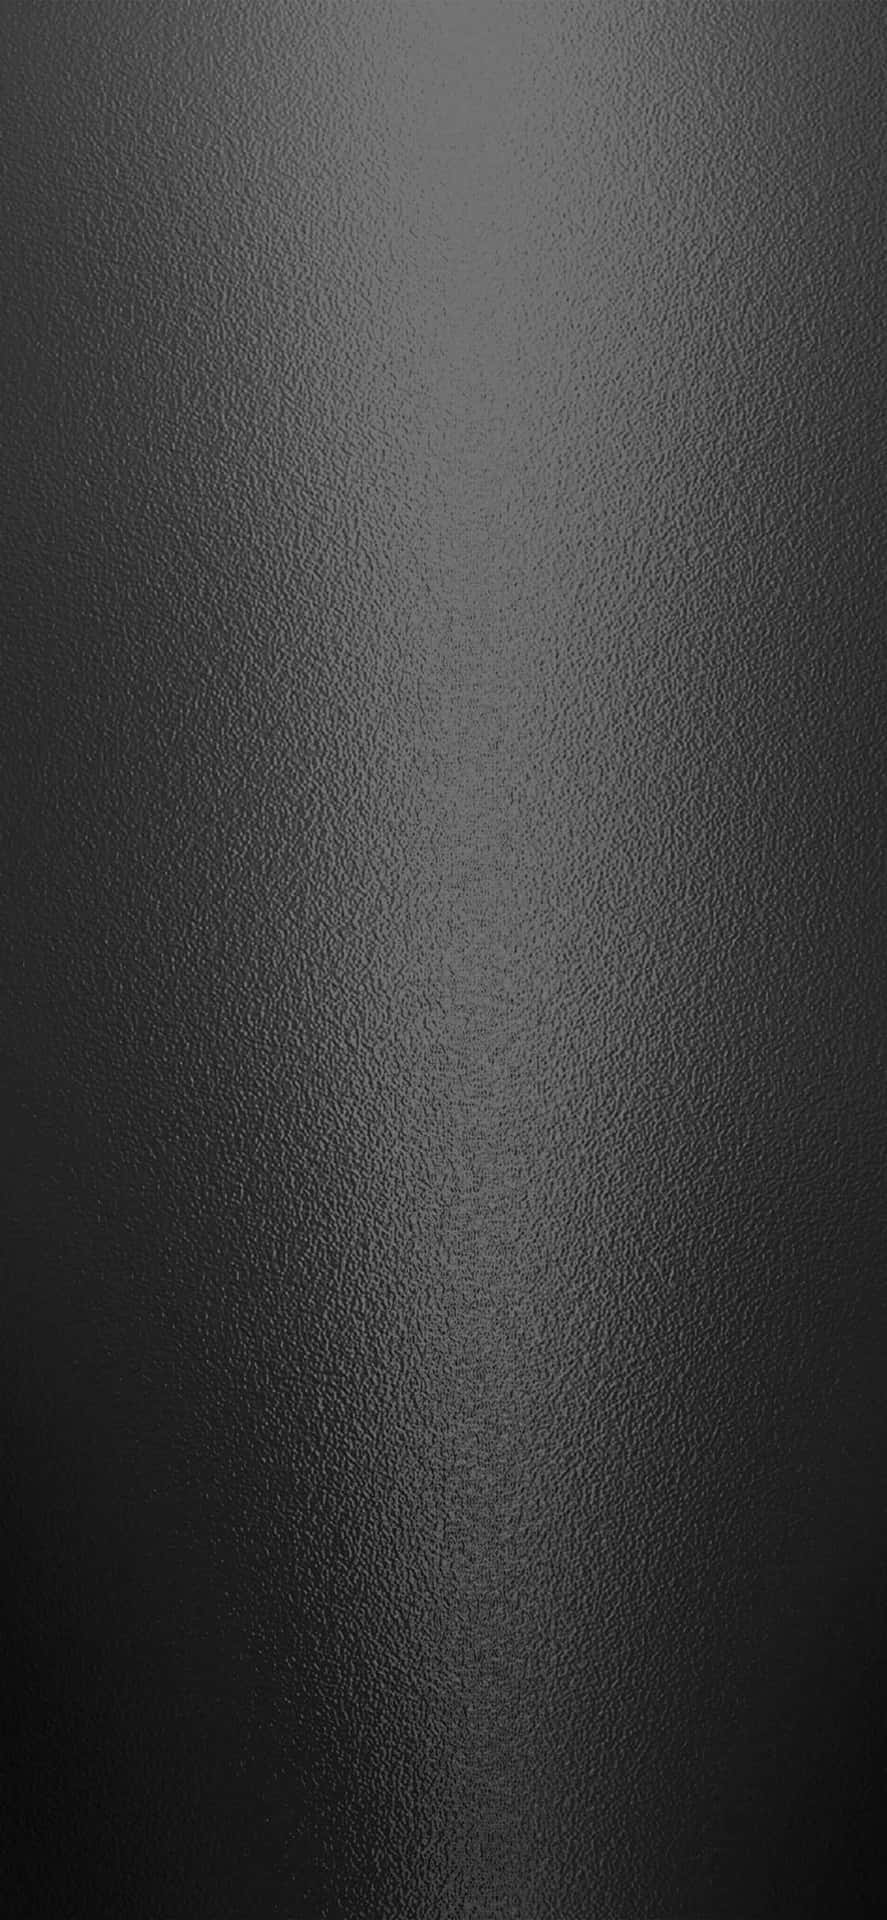 Metal Surface Dark Grey Background